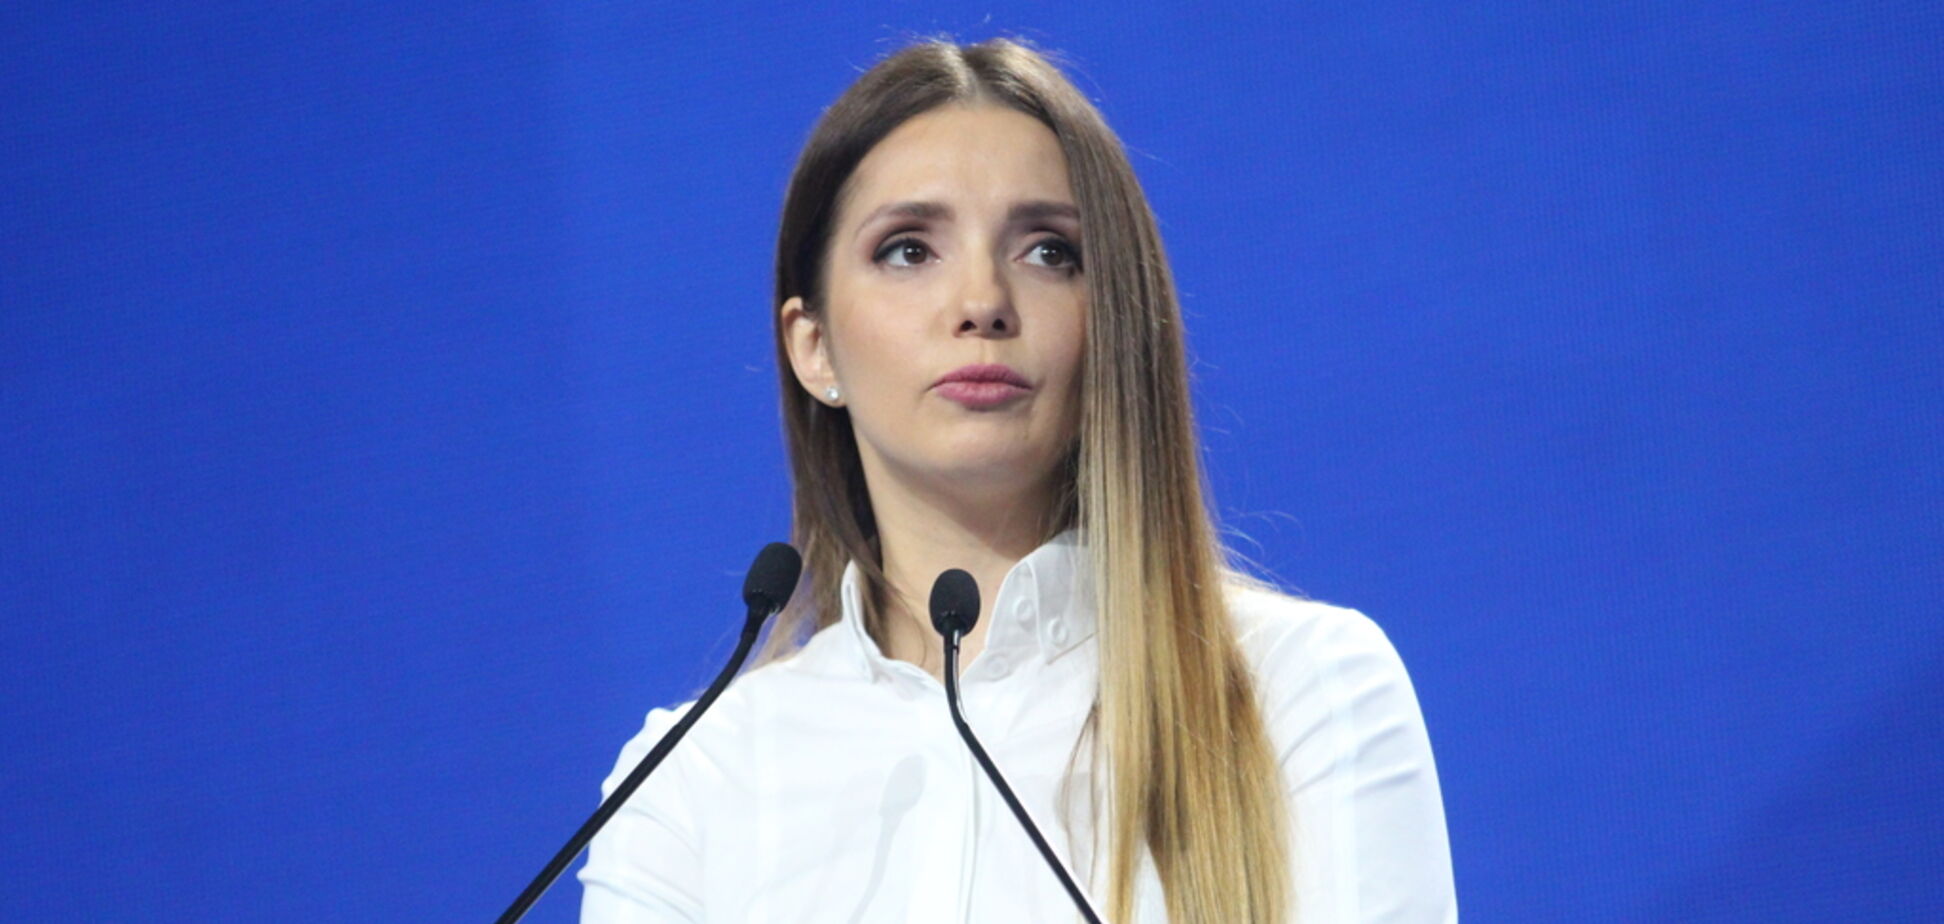 Євгенія Тимошенко: мама не зрадить і не підведе